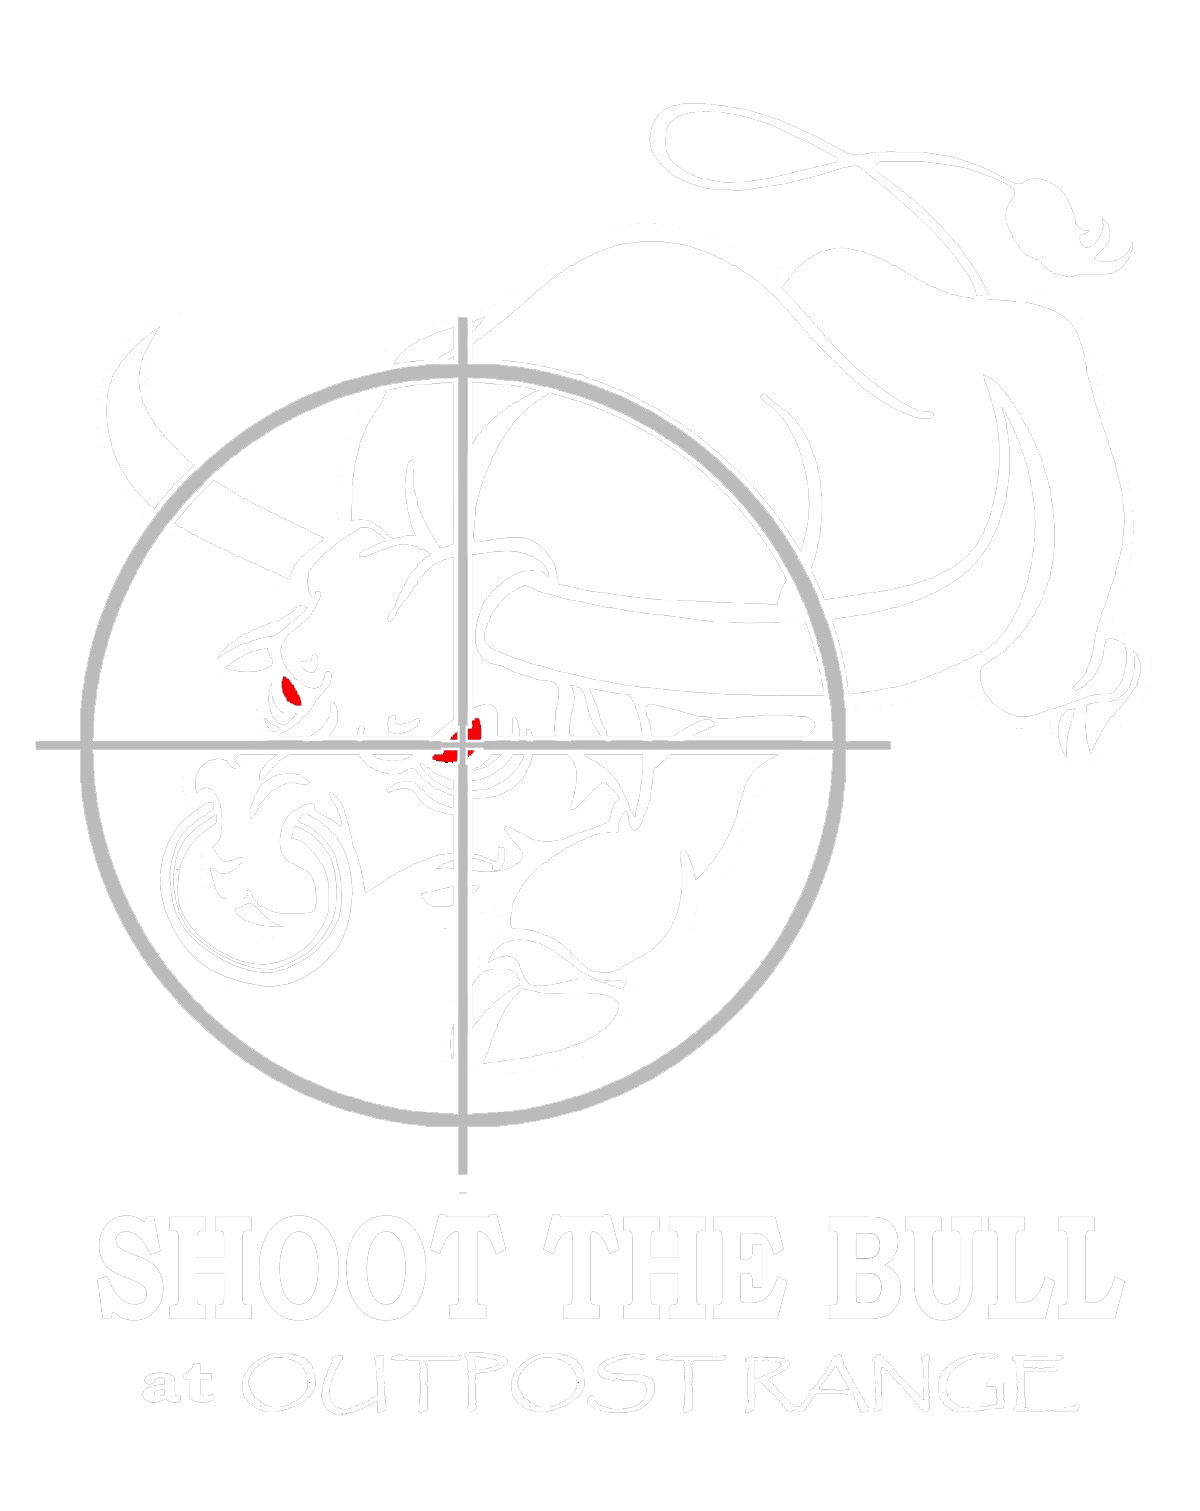 Shoot the Bull